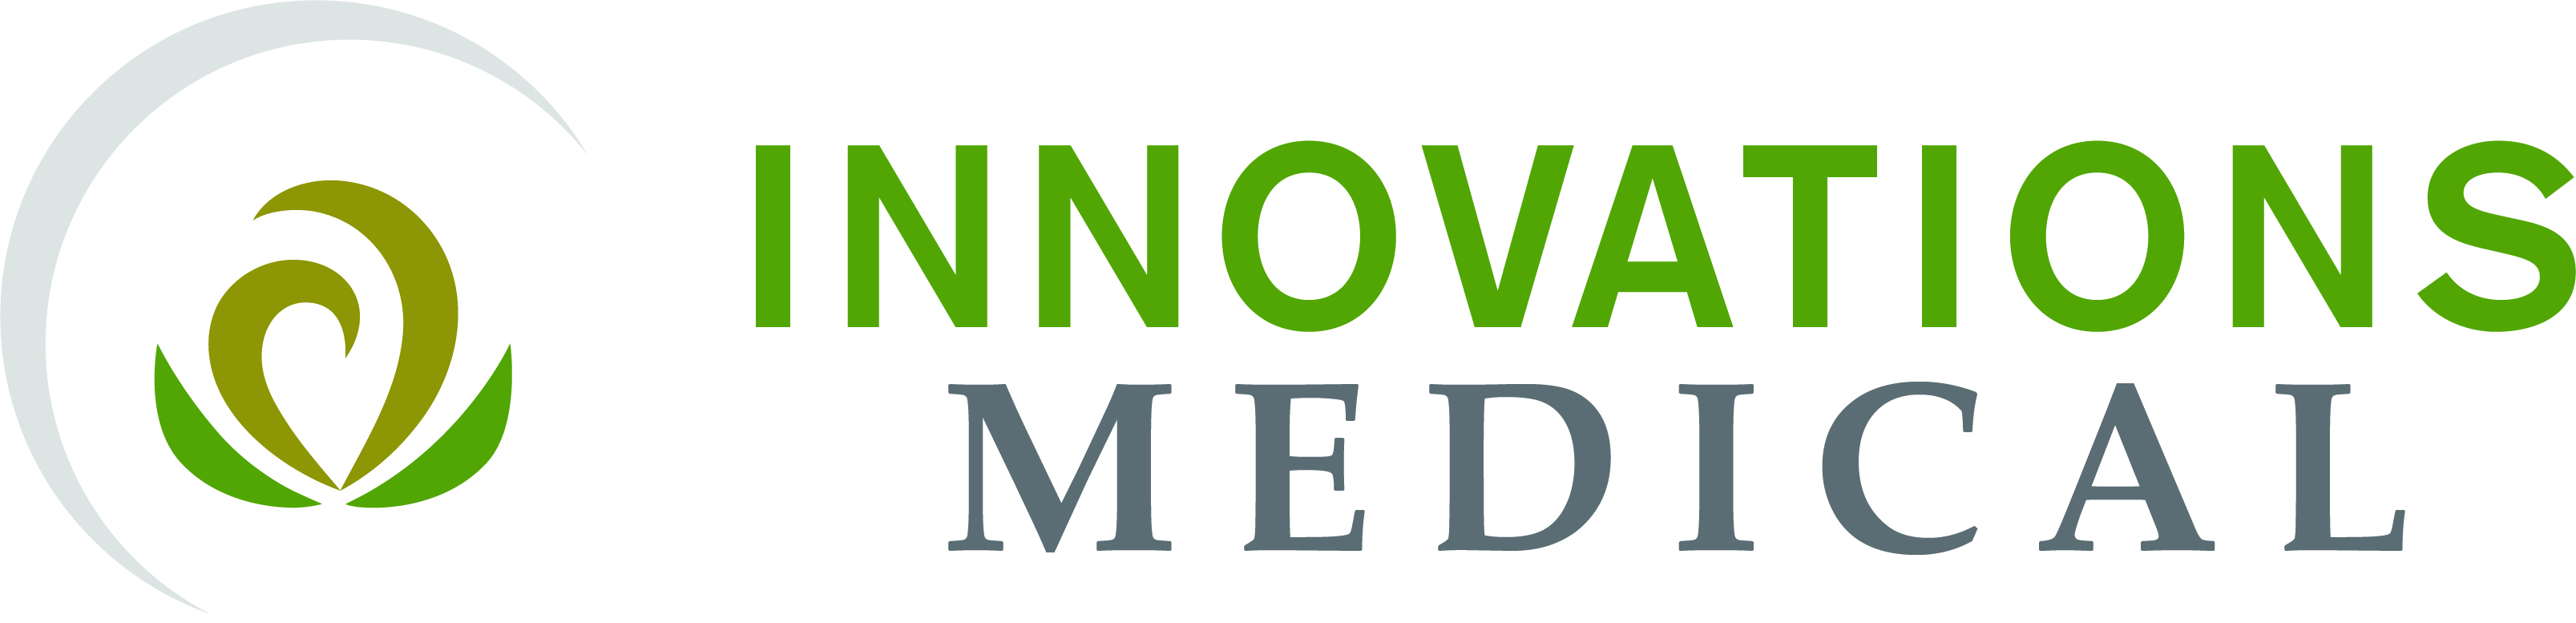 Innovations Medical